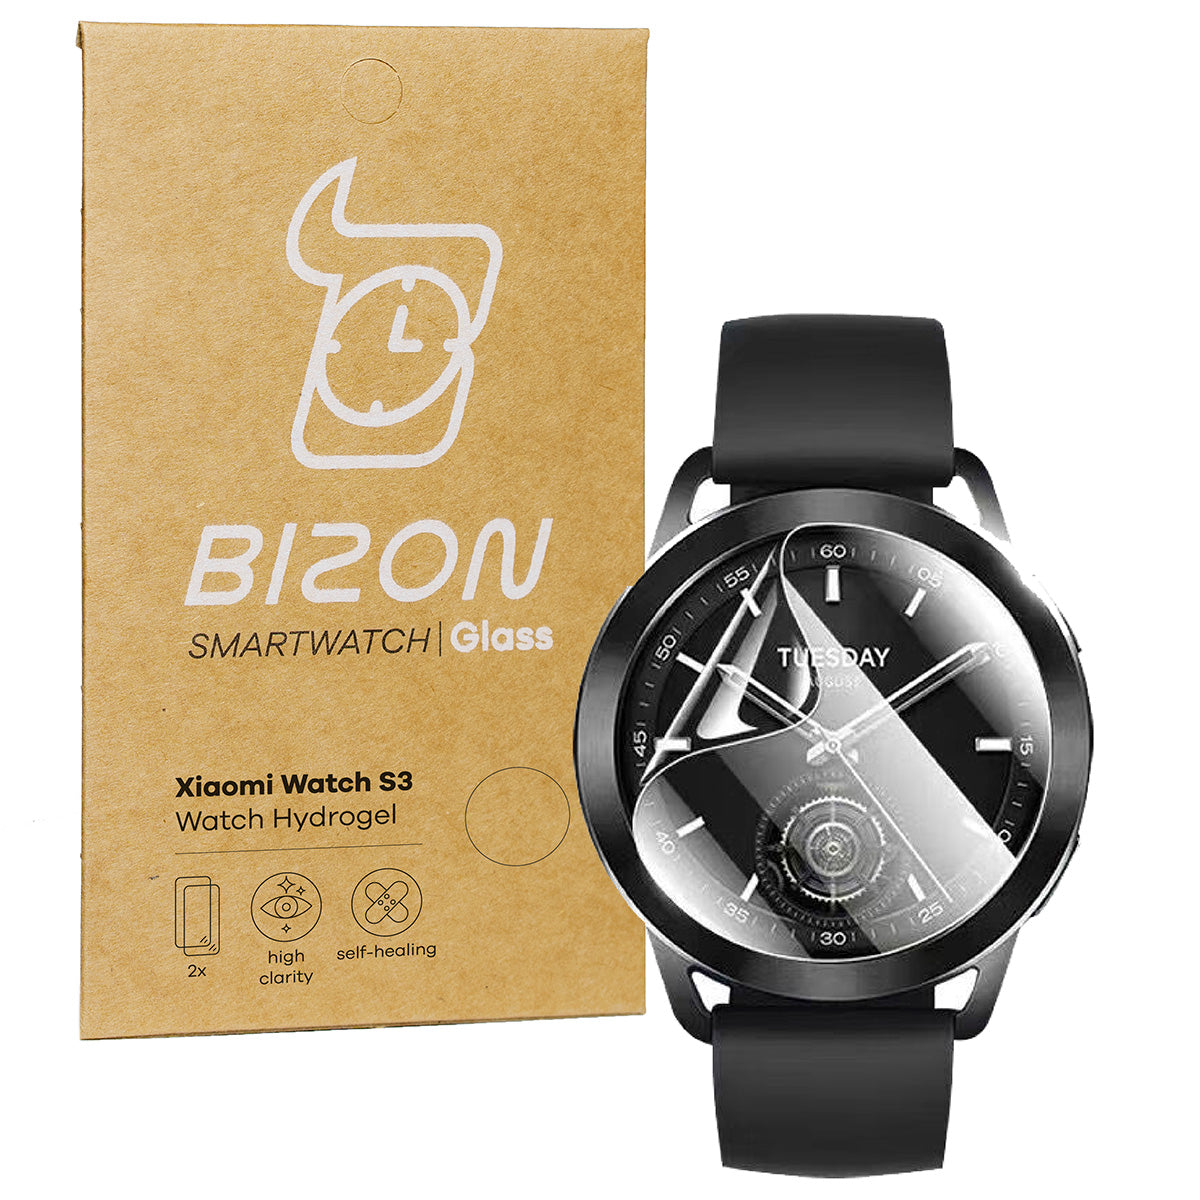 Hydrogel Folie für den Bildschirm für Xiaomi Watch S3 47 mm, Bizon Glass Watch Hydrogel, 2 Stück